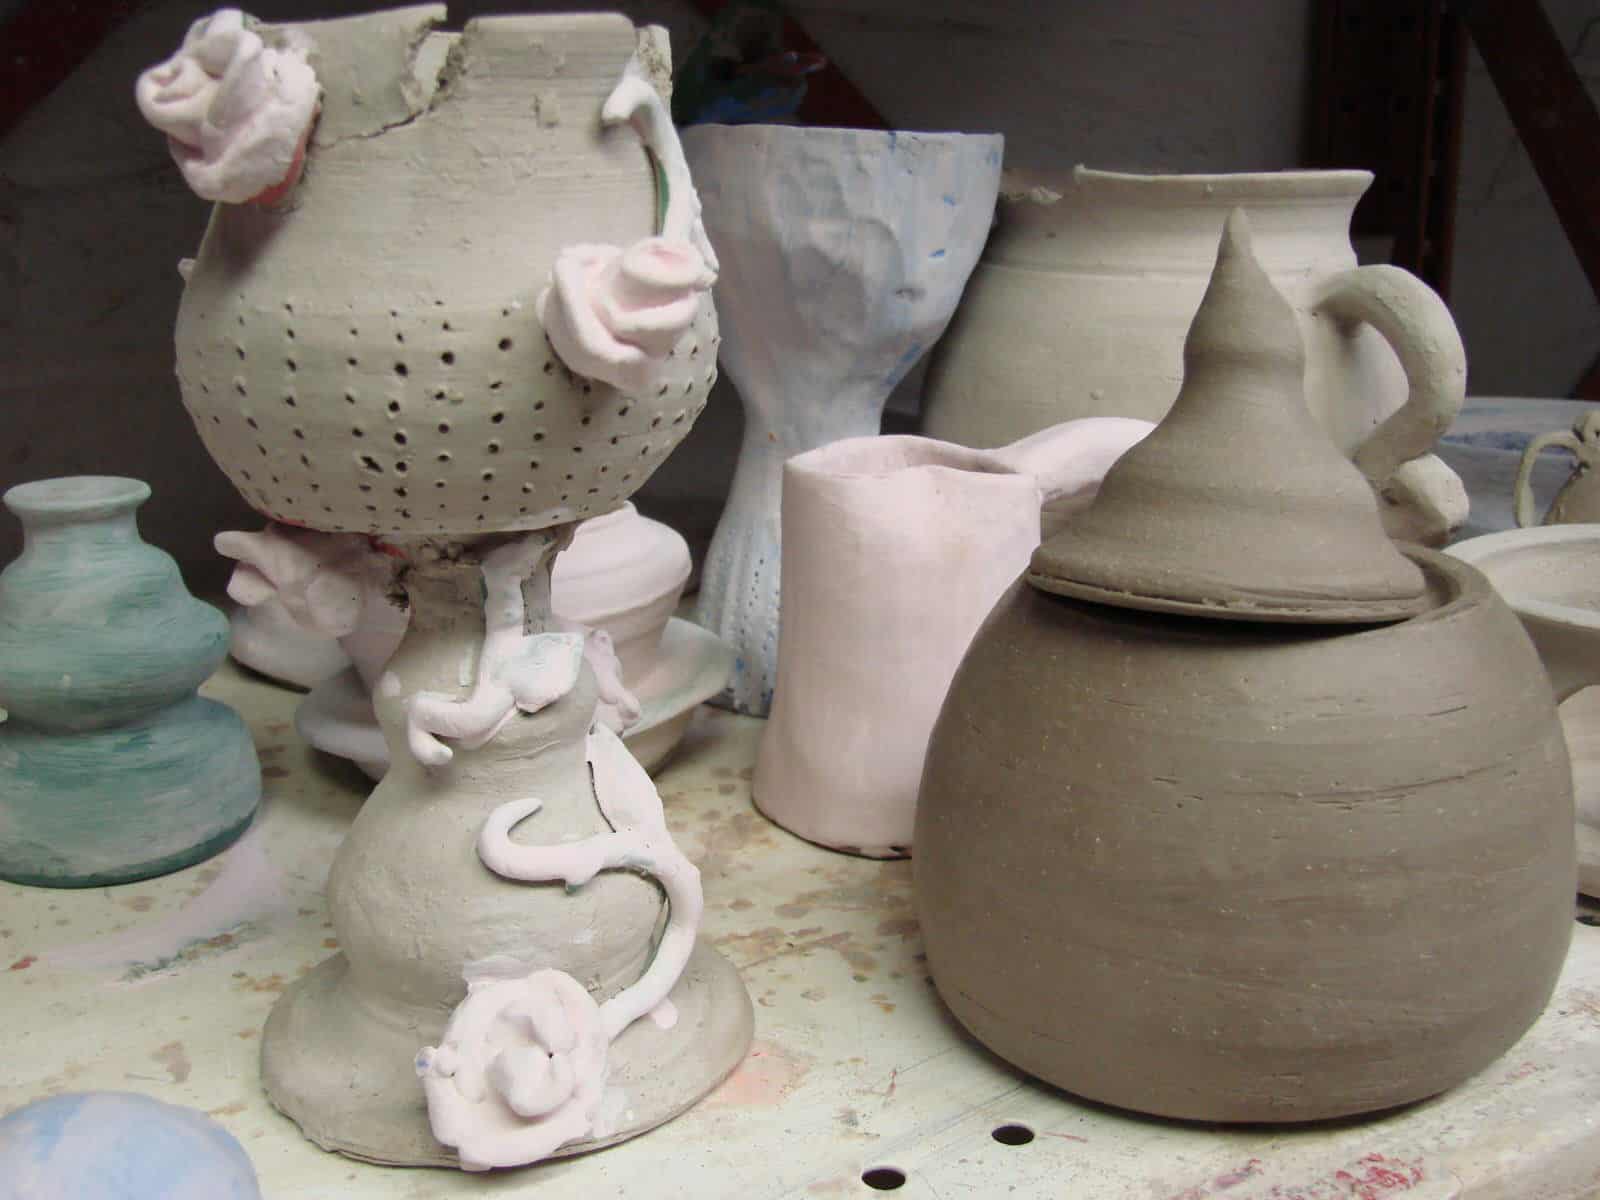 Ceramics Studio - Pittsburgh Center for Arts & Media